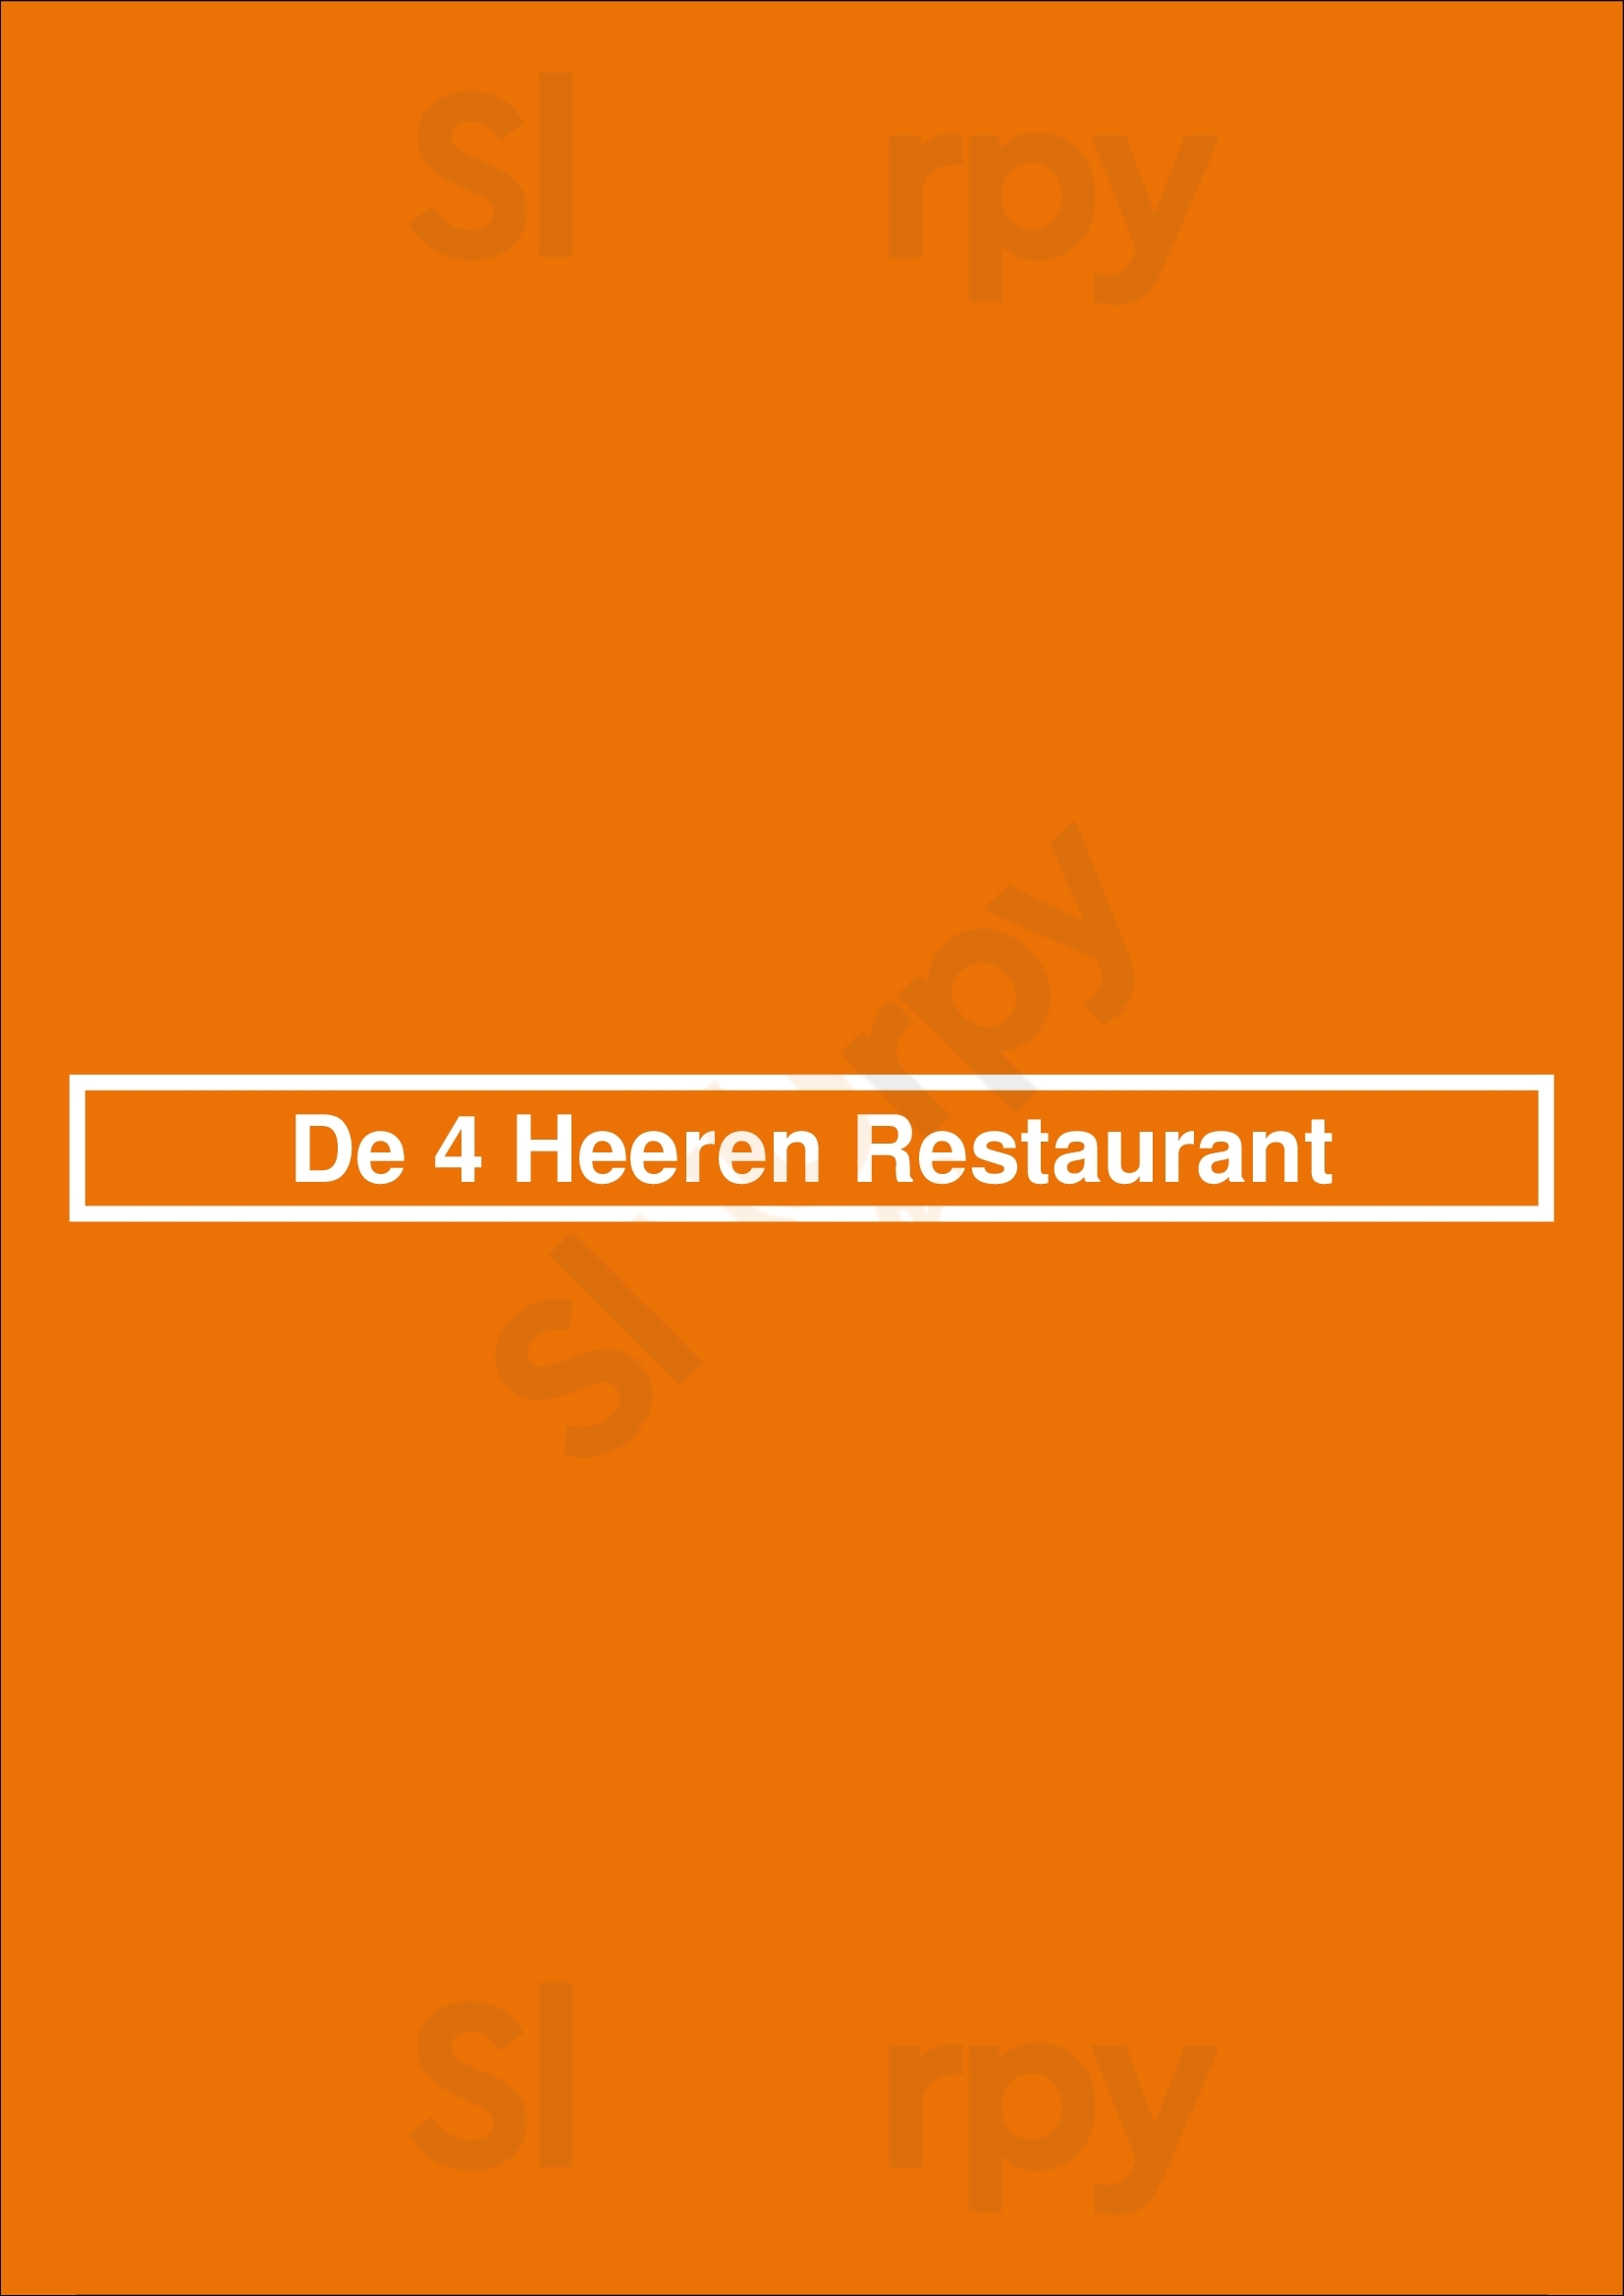 De 4 Heeren Restaurant Nijmegen Menu - 1